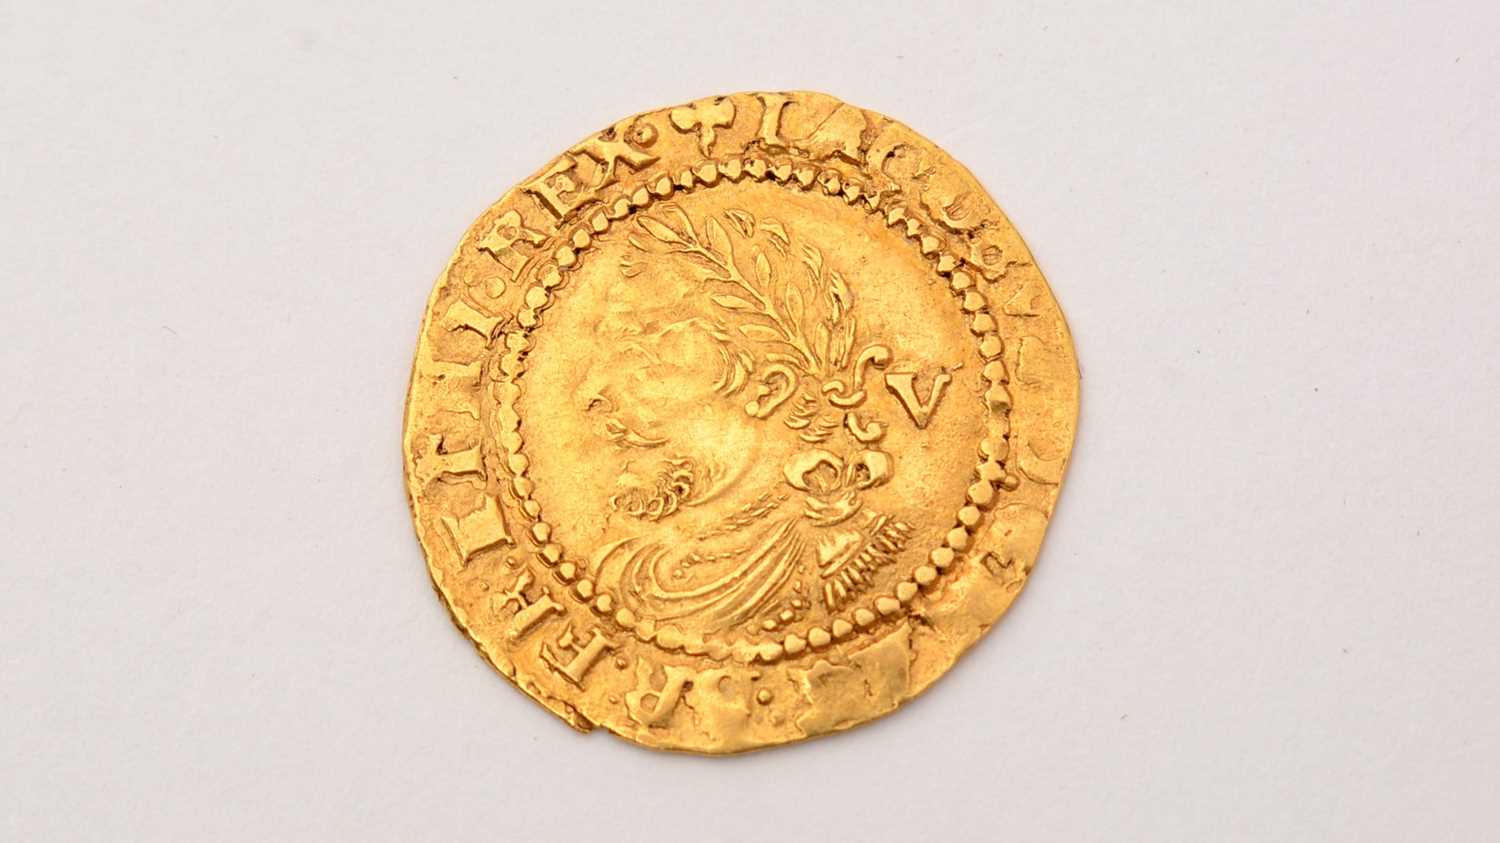 James I quarter Laurel hammered gold coin, - Image 2 of 2